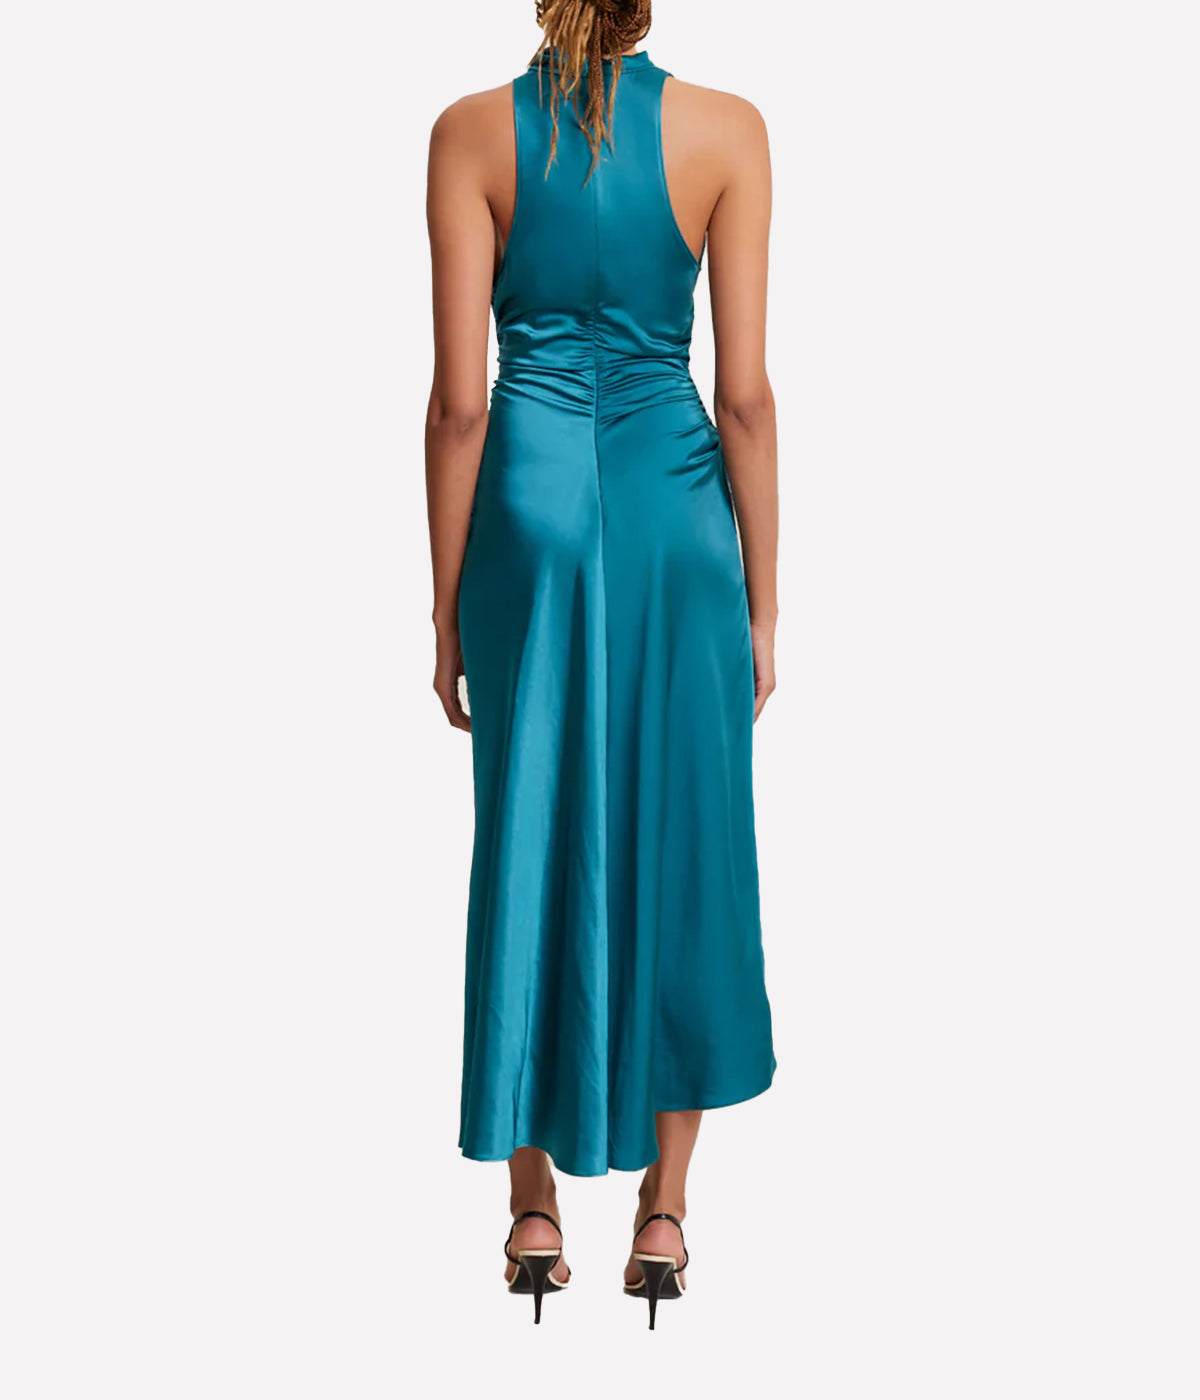 Inez Dress in Emerald